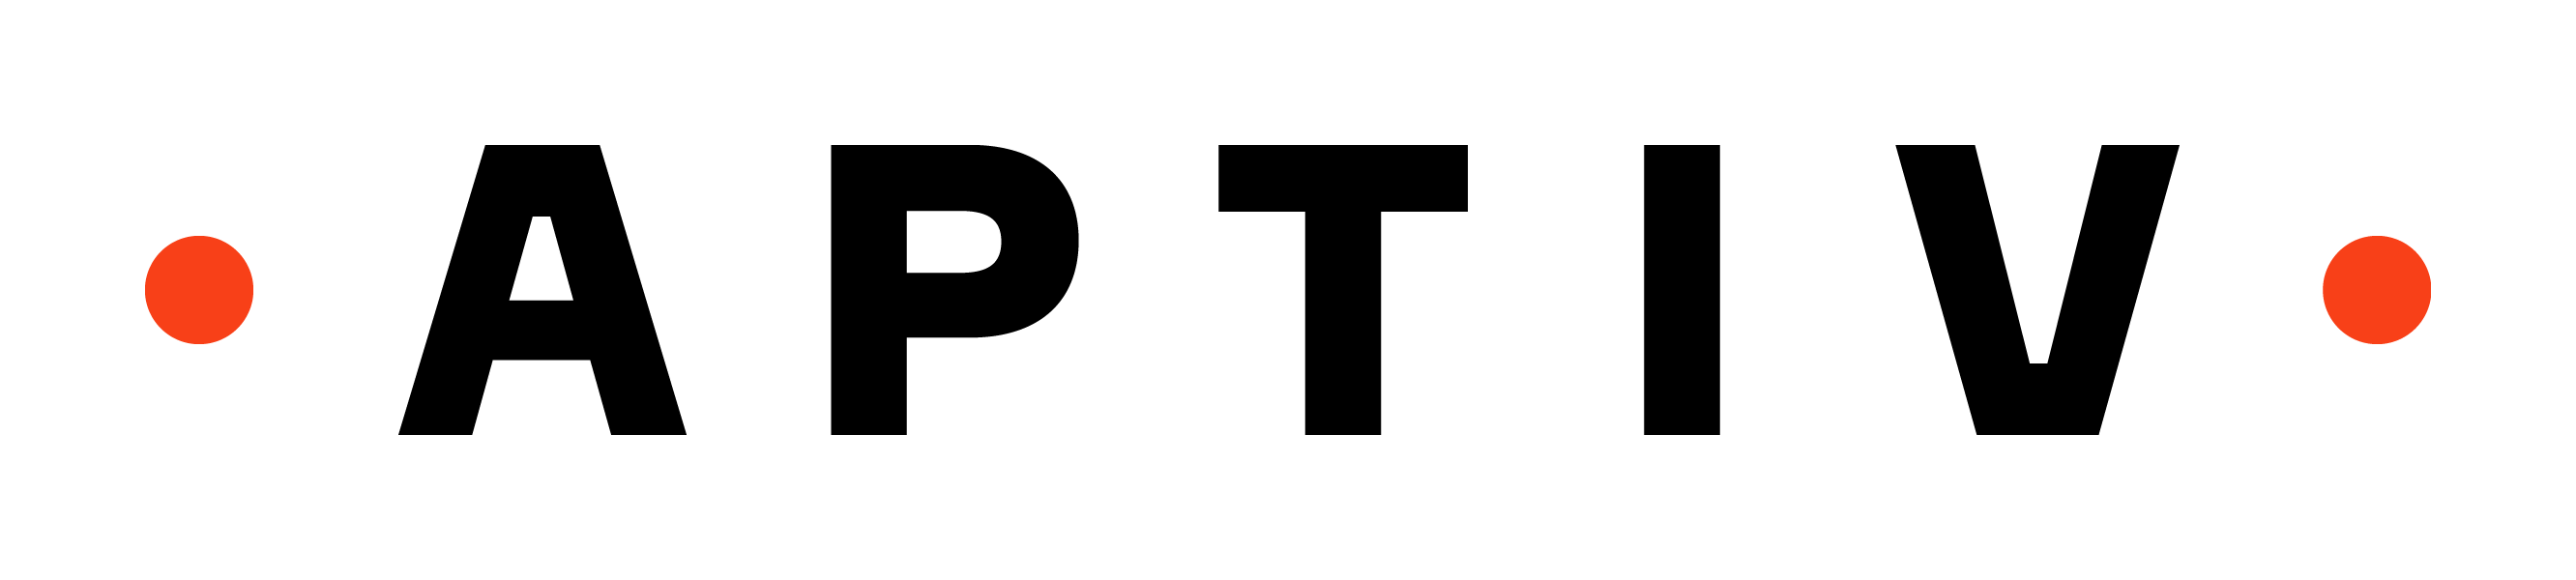 Aptiv Brand Logo